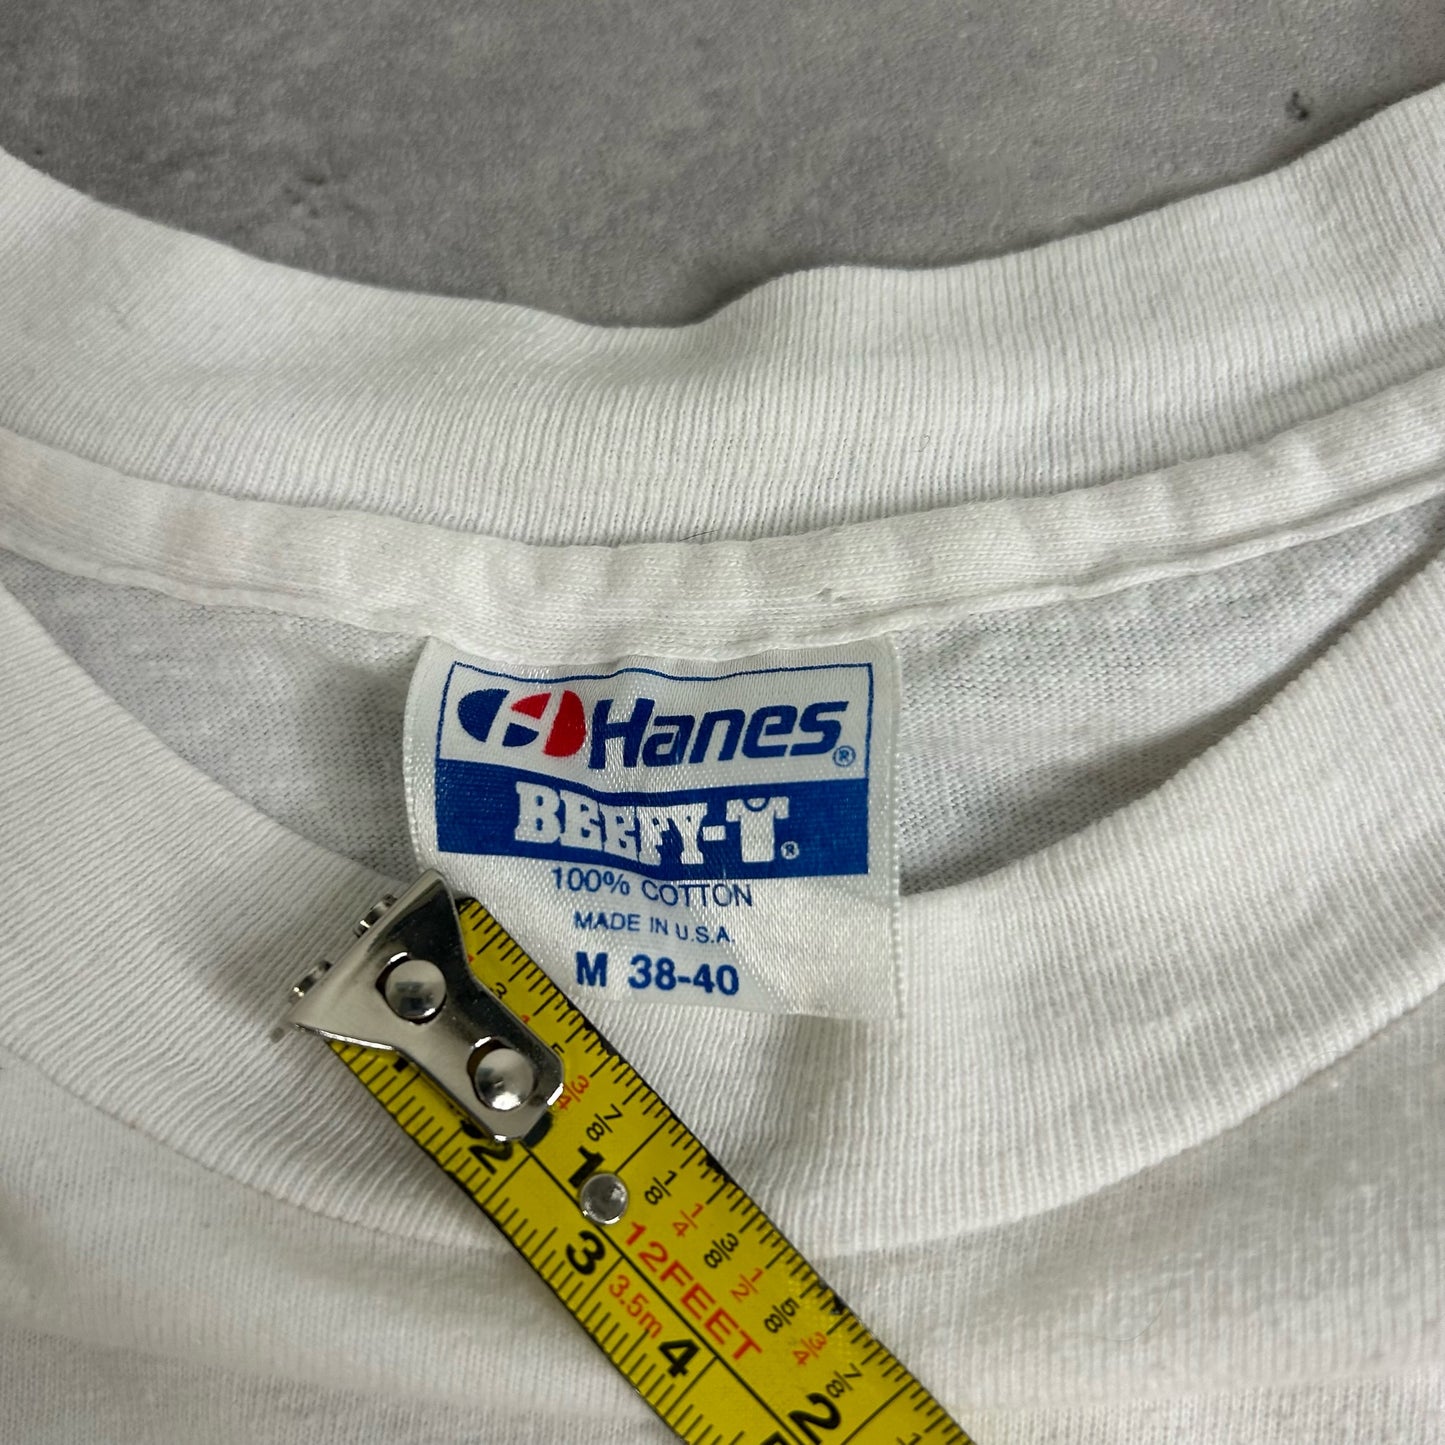 80's Killington Vermont Ski Long Sleeve Shirt size M